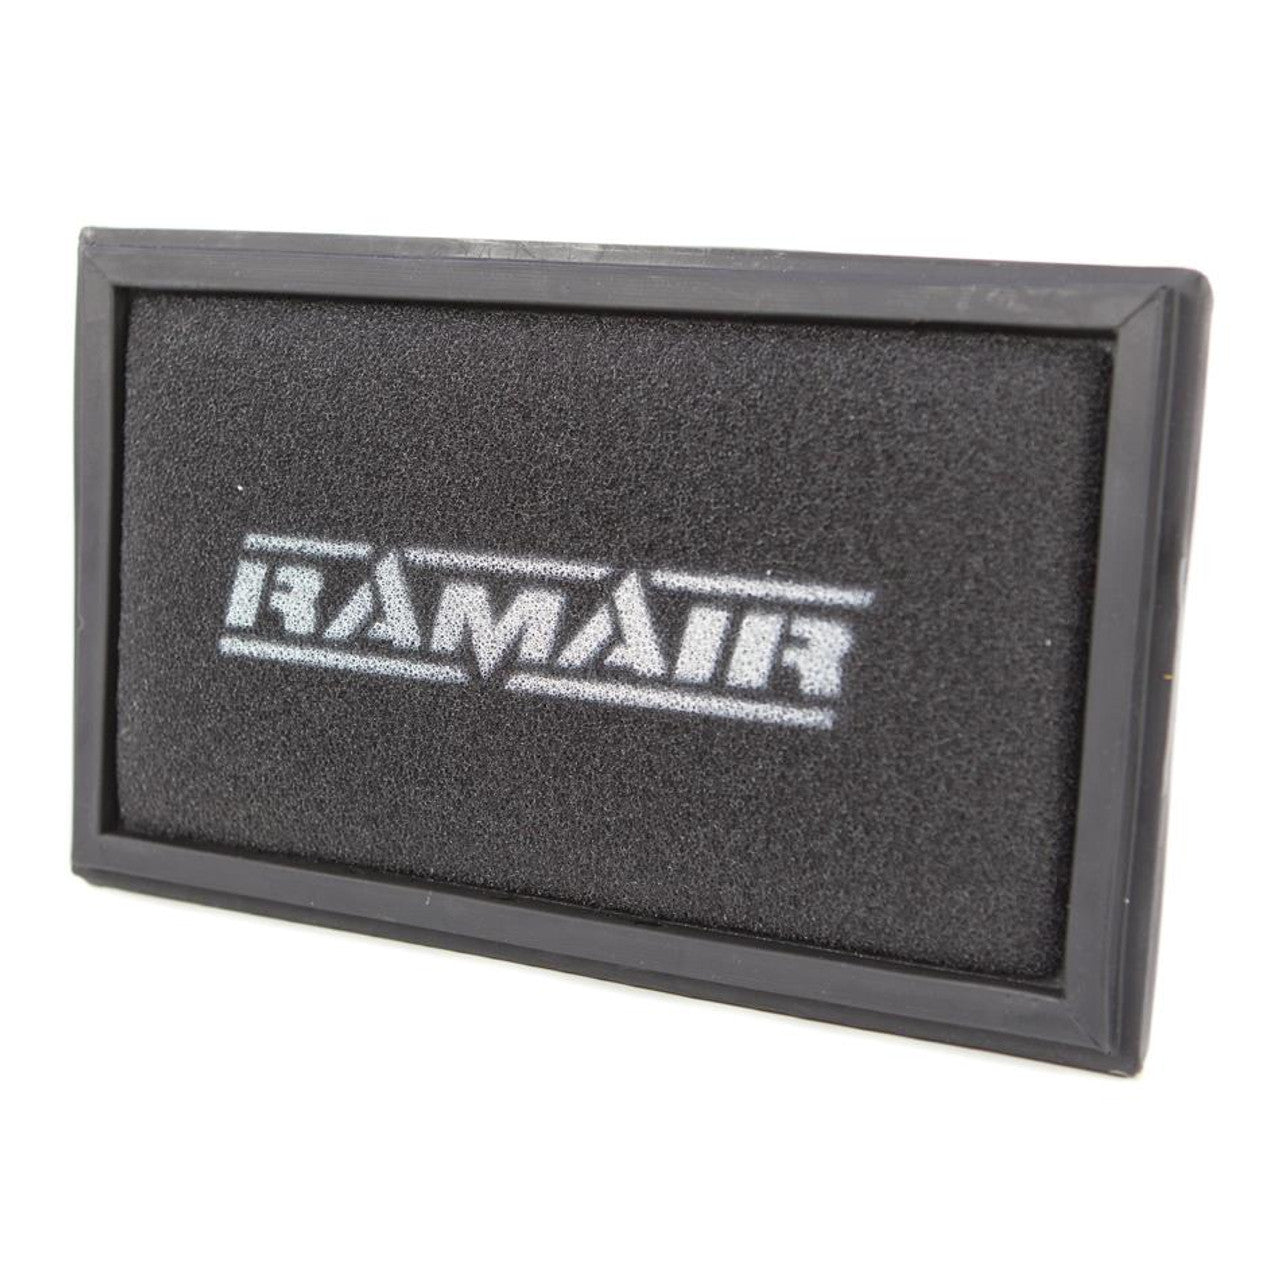 Ramair RPF-1846 - Renault Replacement Foam Air Filter-intake pipework-carbonizeduk